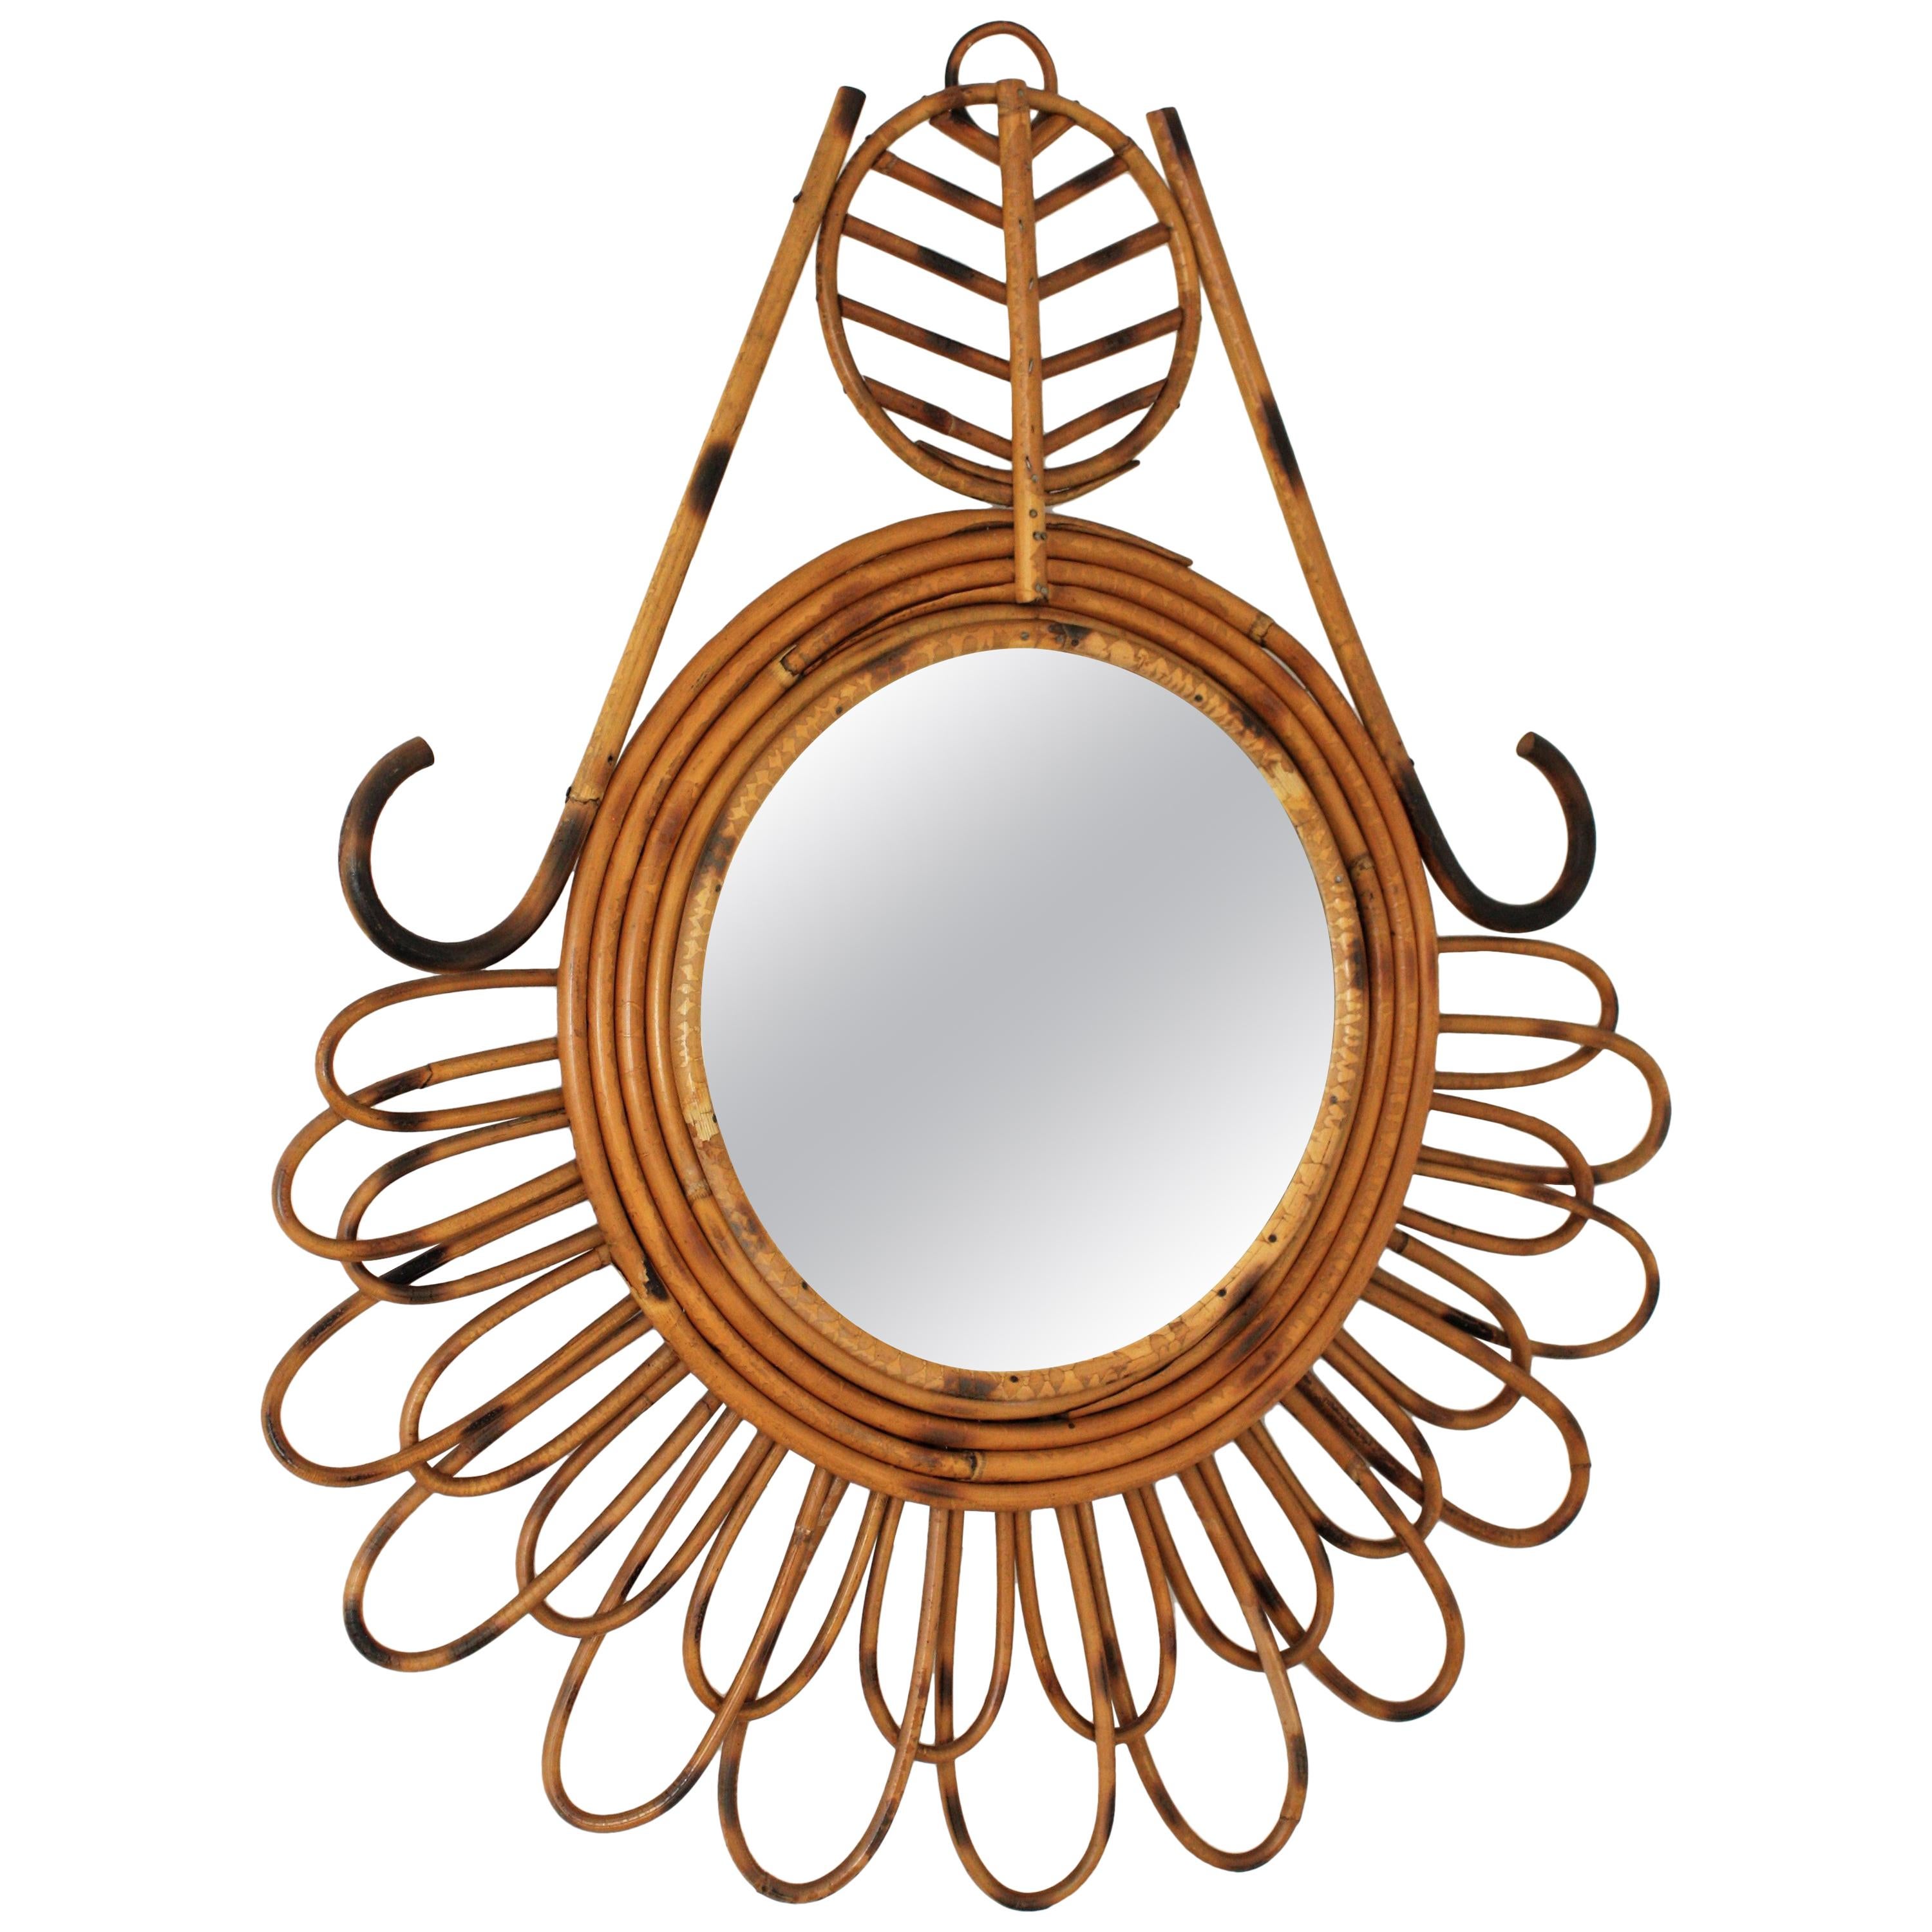 Miroir abstrait en rotin de style méditerranéen, France, 1950-1960.
Ce miroir présente des pétales de rotin en deux tailles, un décor abstrait ornant le cadre et cinq boucles de rotin entourant un verre circulaire.
Dimensions du verre : 23,5 cm de